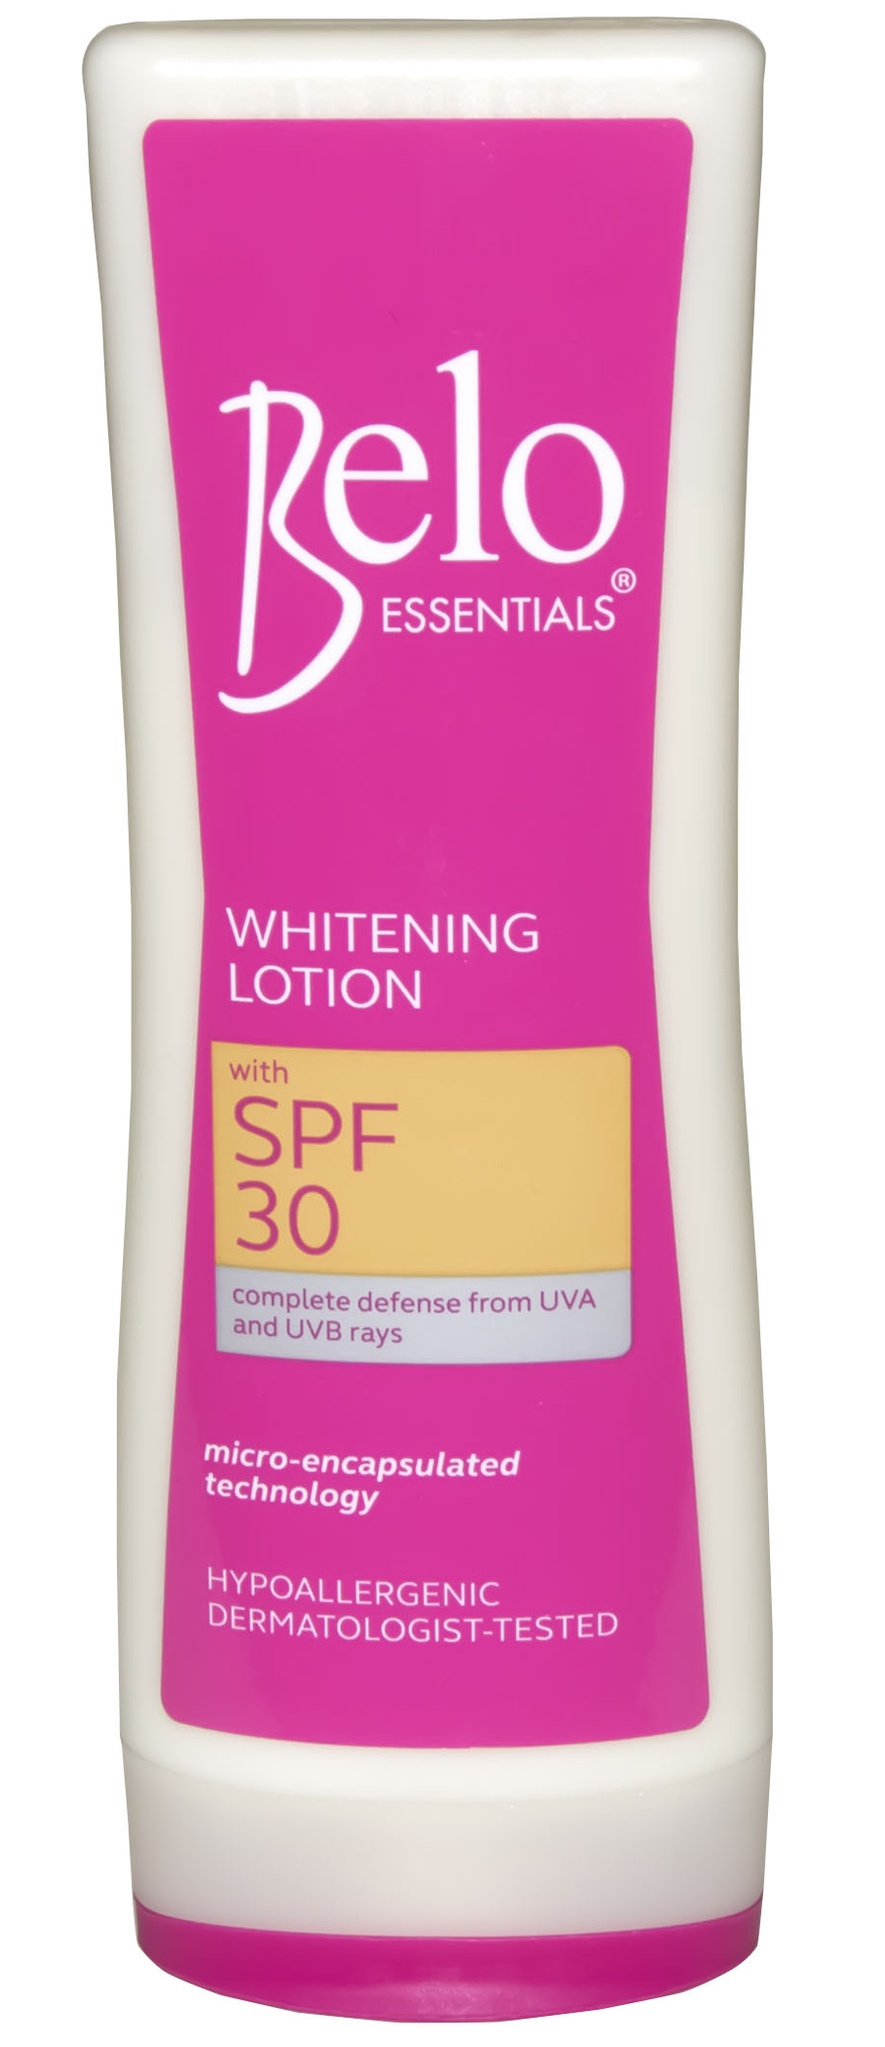 Belo Essentials Whitening Lotion SPF 30